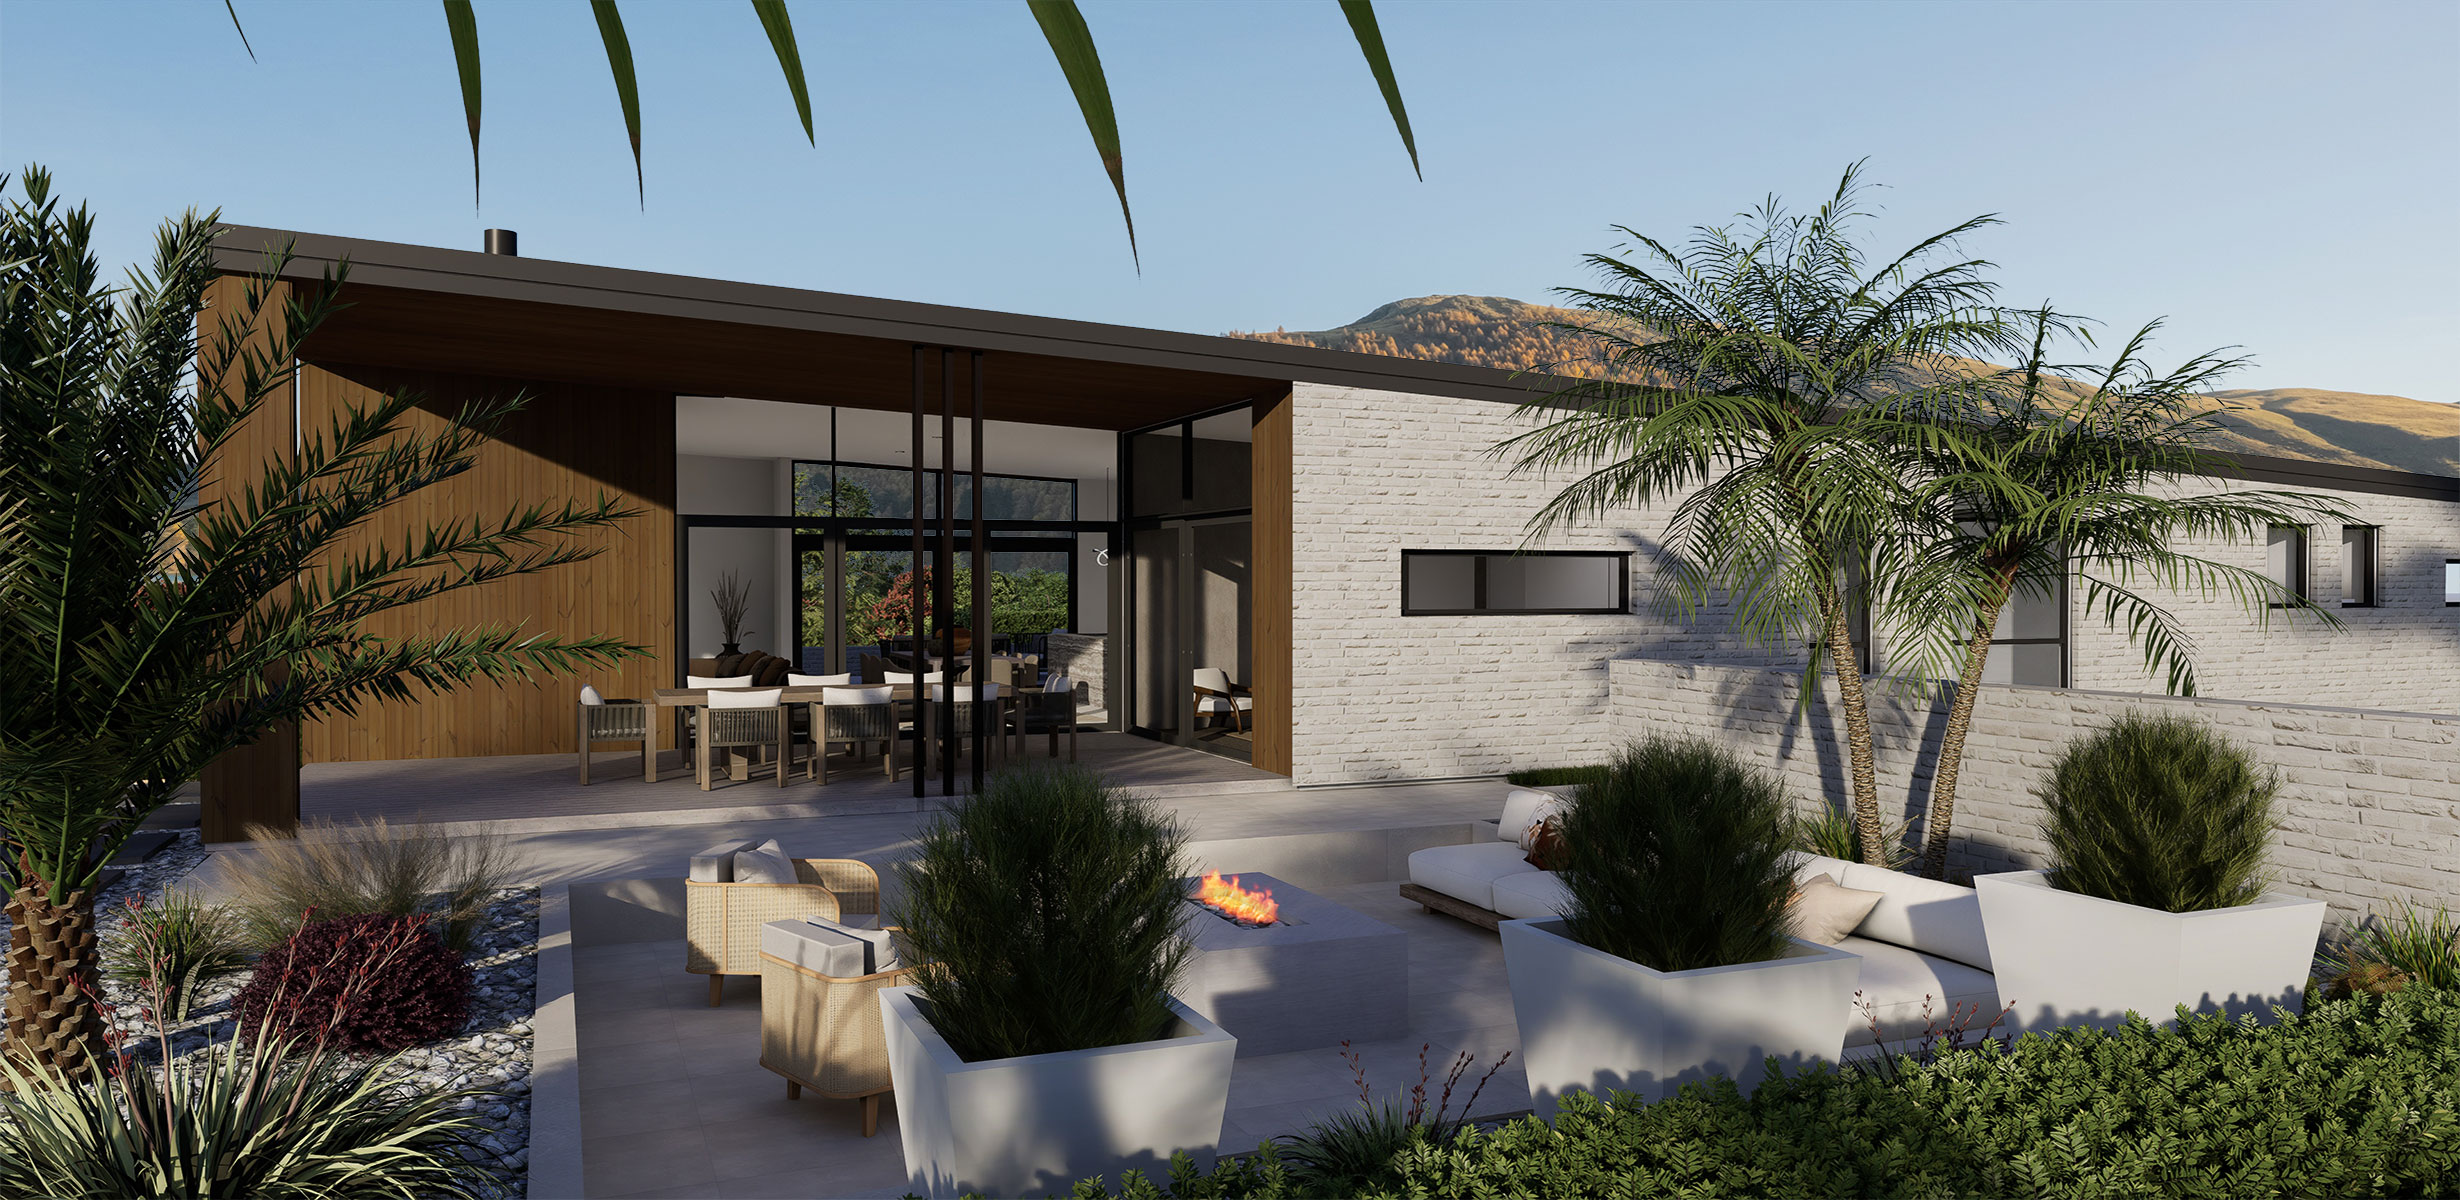 Hallmark Homes Luxury Prestige Series Bremner Bay Rear Outdoor Living View Plan Christchurch NZ.